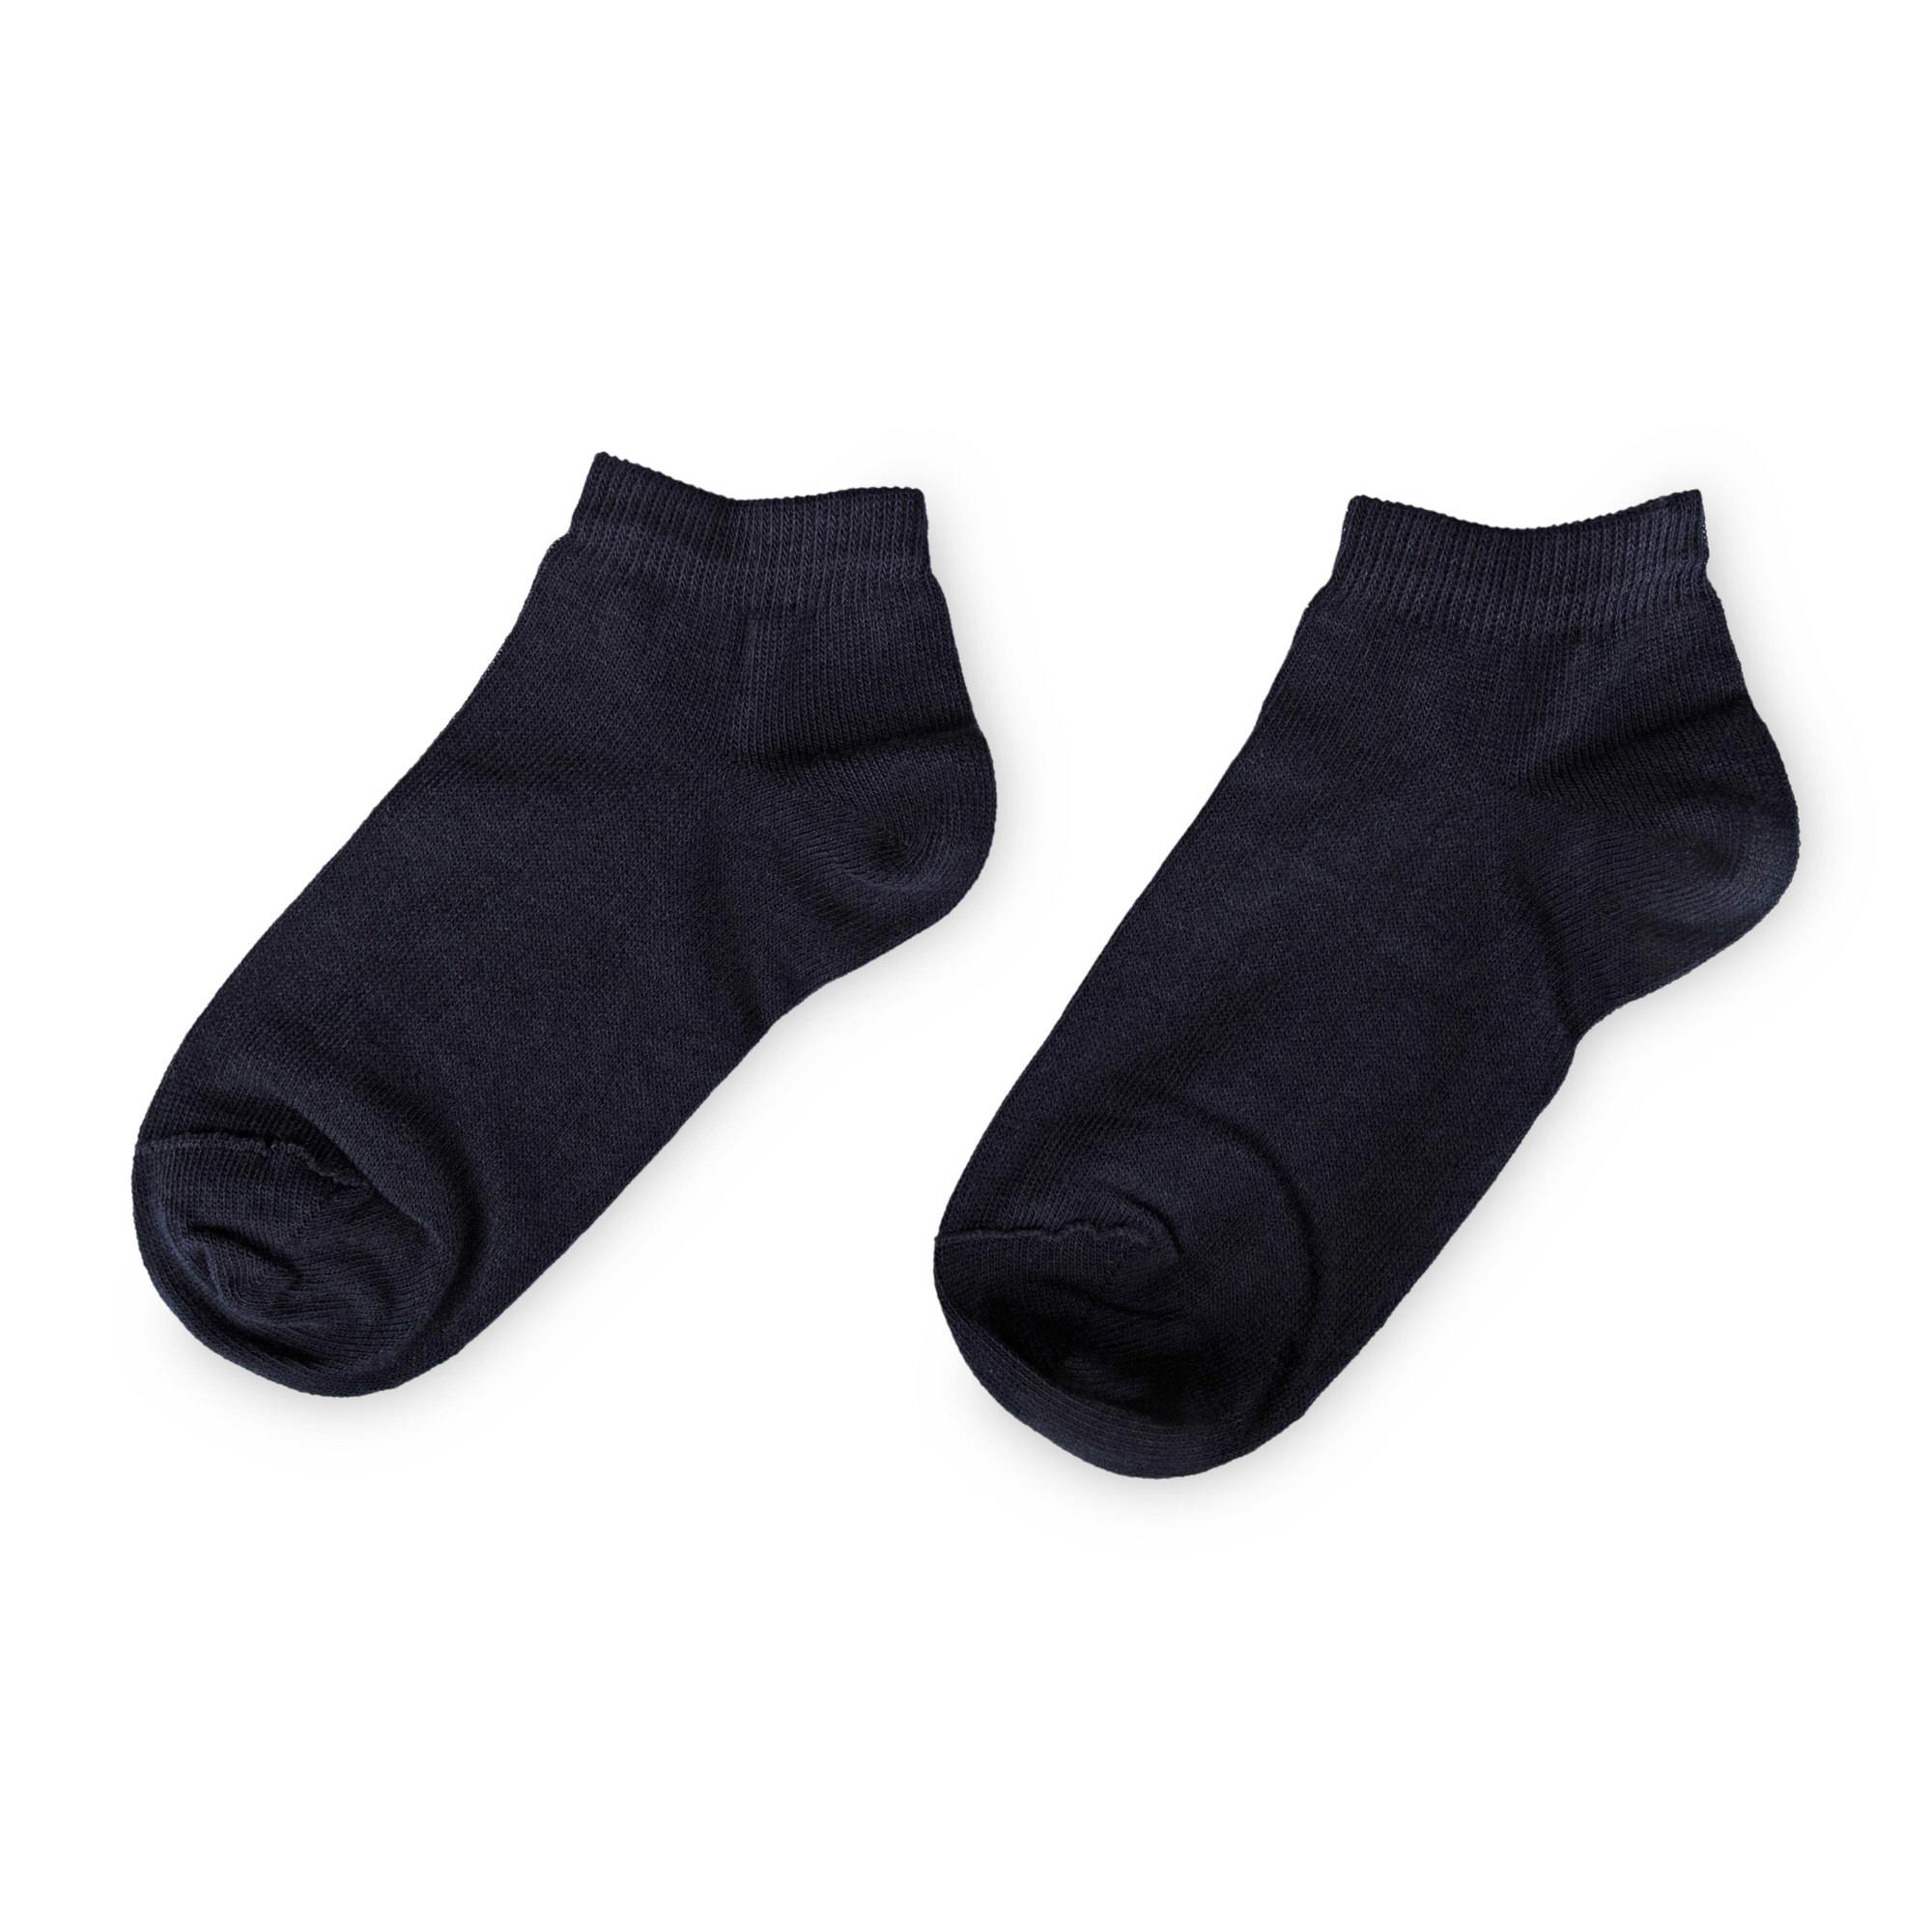 Children's trainer socks, navy